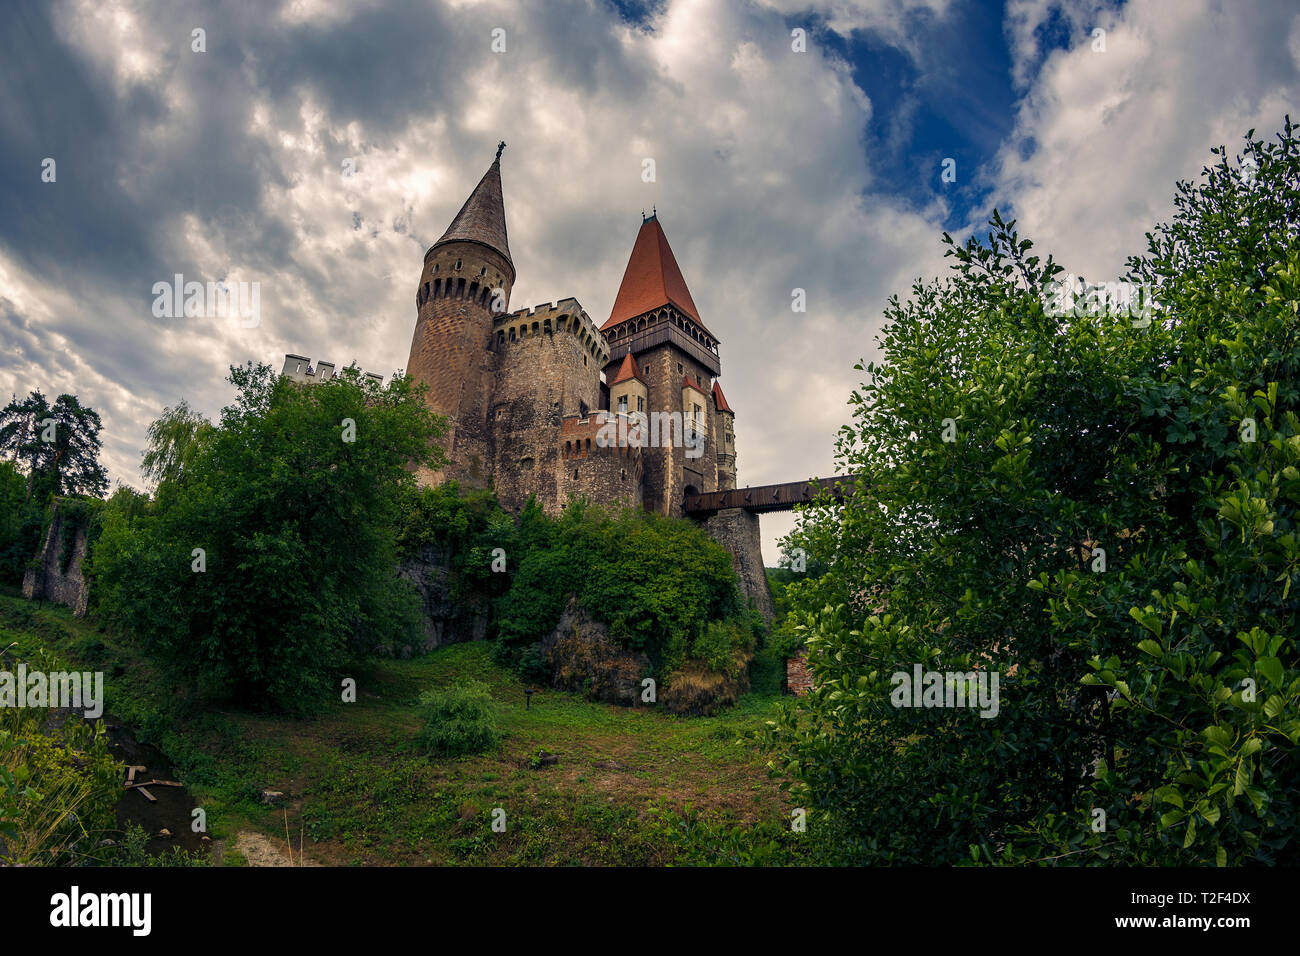 Bel castello medioevale con la sua incredibile architettura trovati in Hunedoara Romania dal nome Corvin Castello girato in condizioni di luce diurna contro un cielo nuvoloso Foto Stock